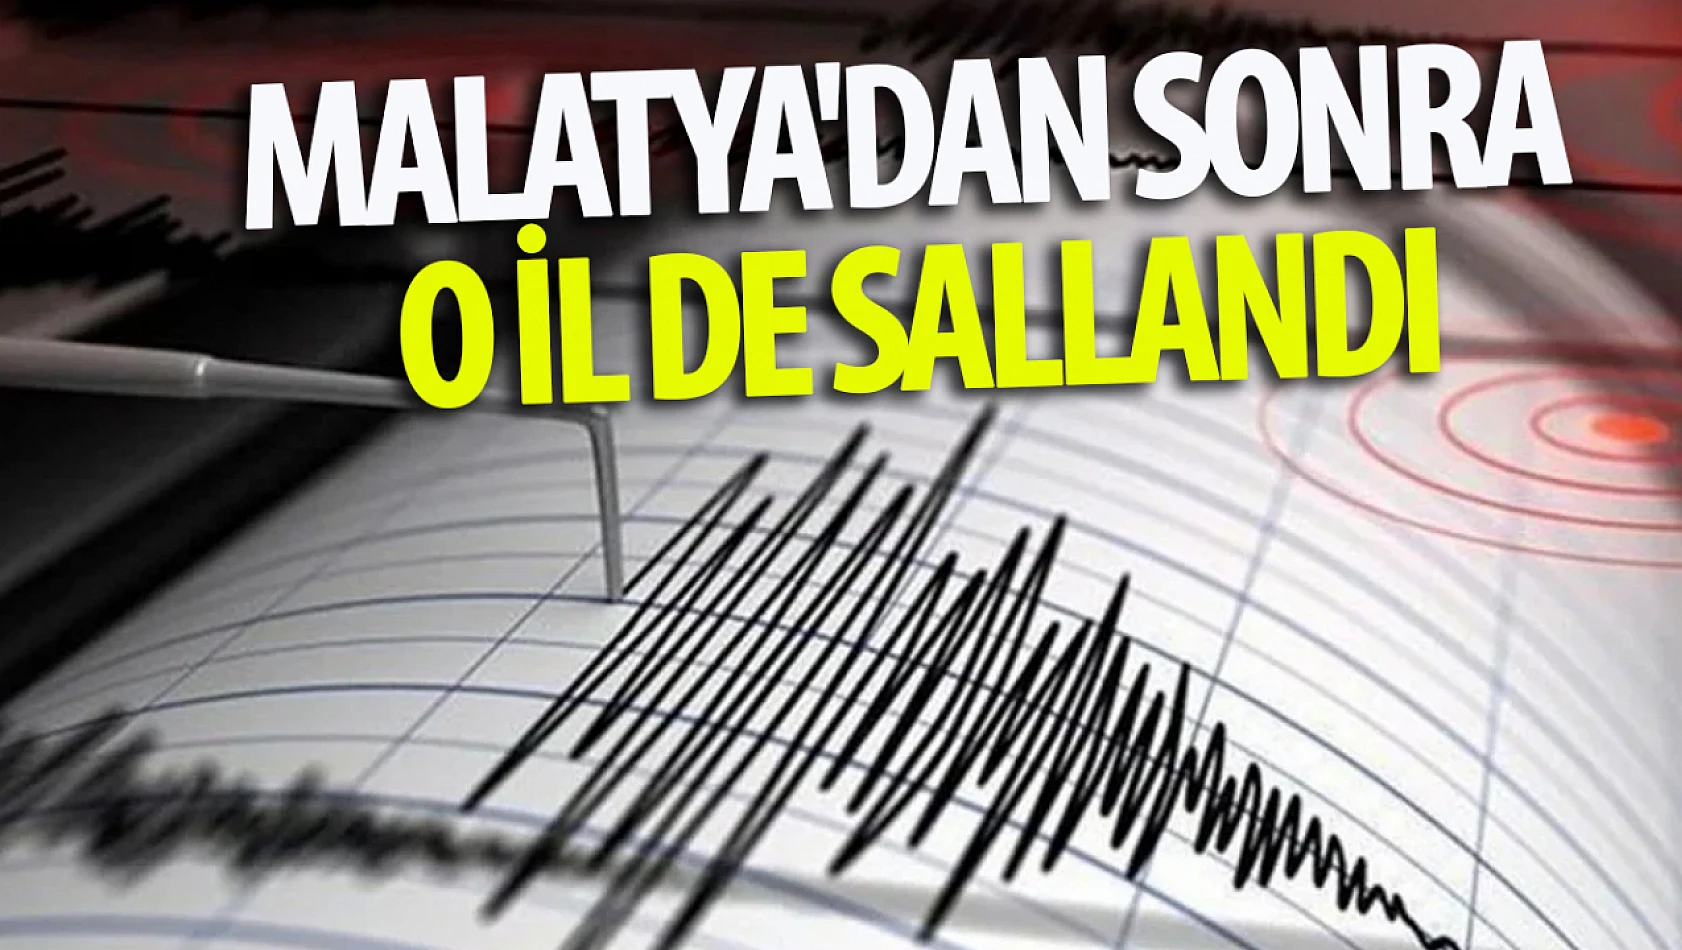 Malatya'dan sonra o il de sallandı: Deprem bölgesinde ne oluyor? 